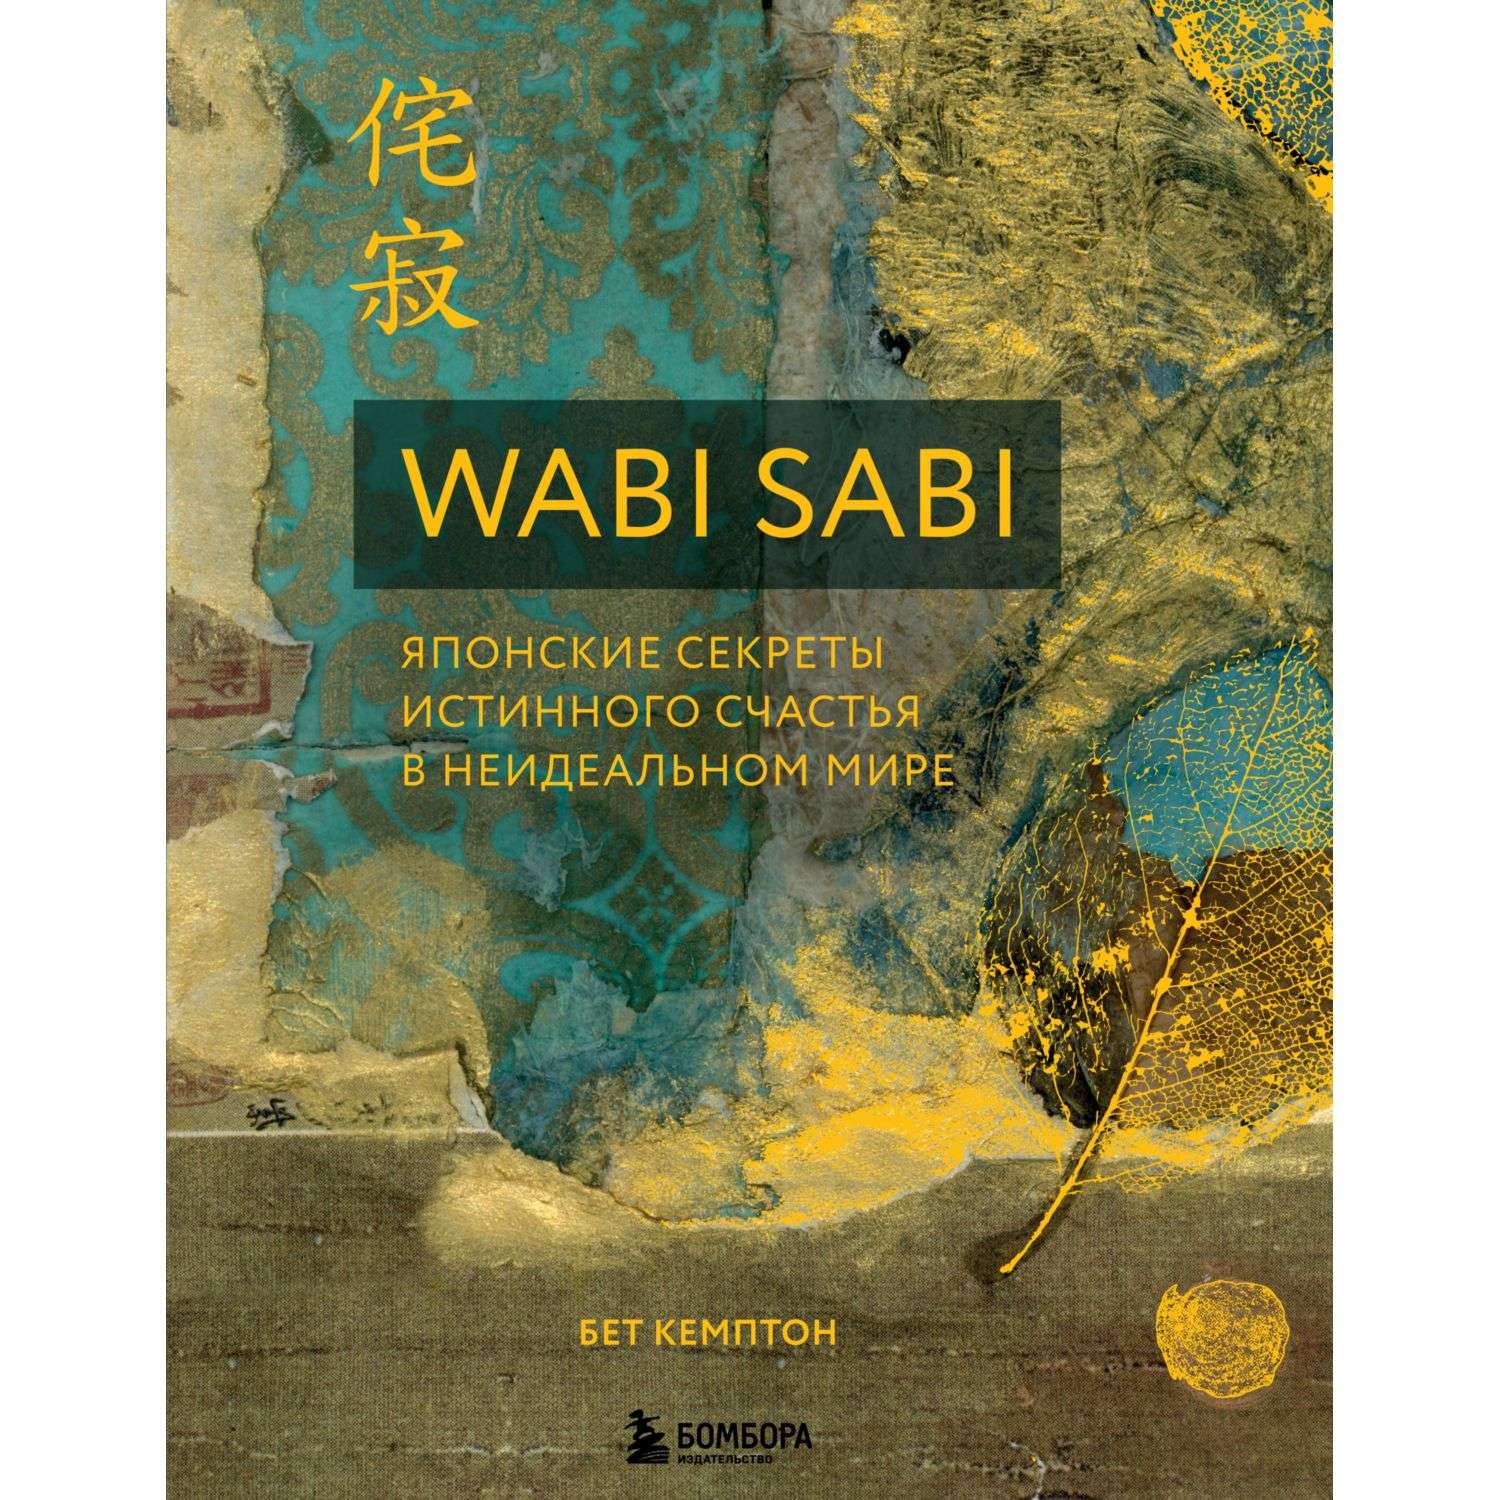 Книга БОМБОРА Wabi Sabi Японские секреты истинного счастья в неидеальном мире - фото 1